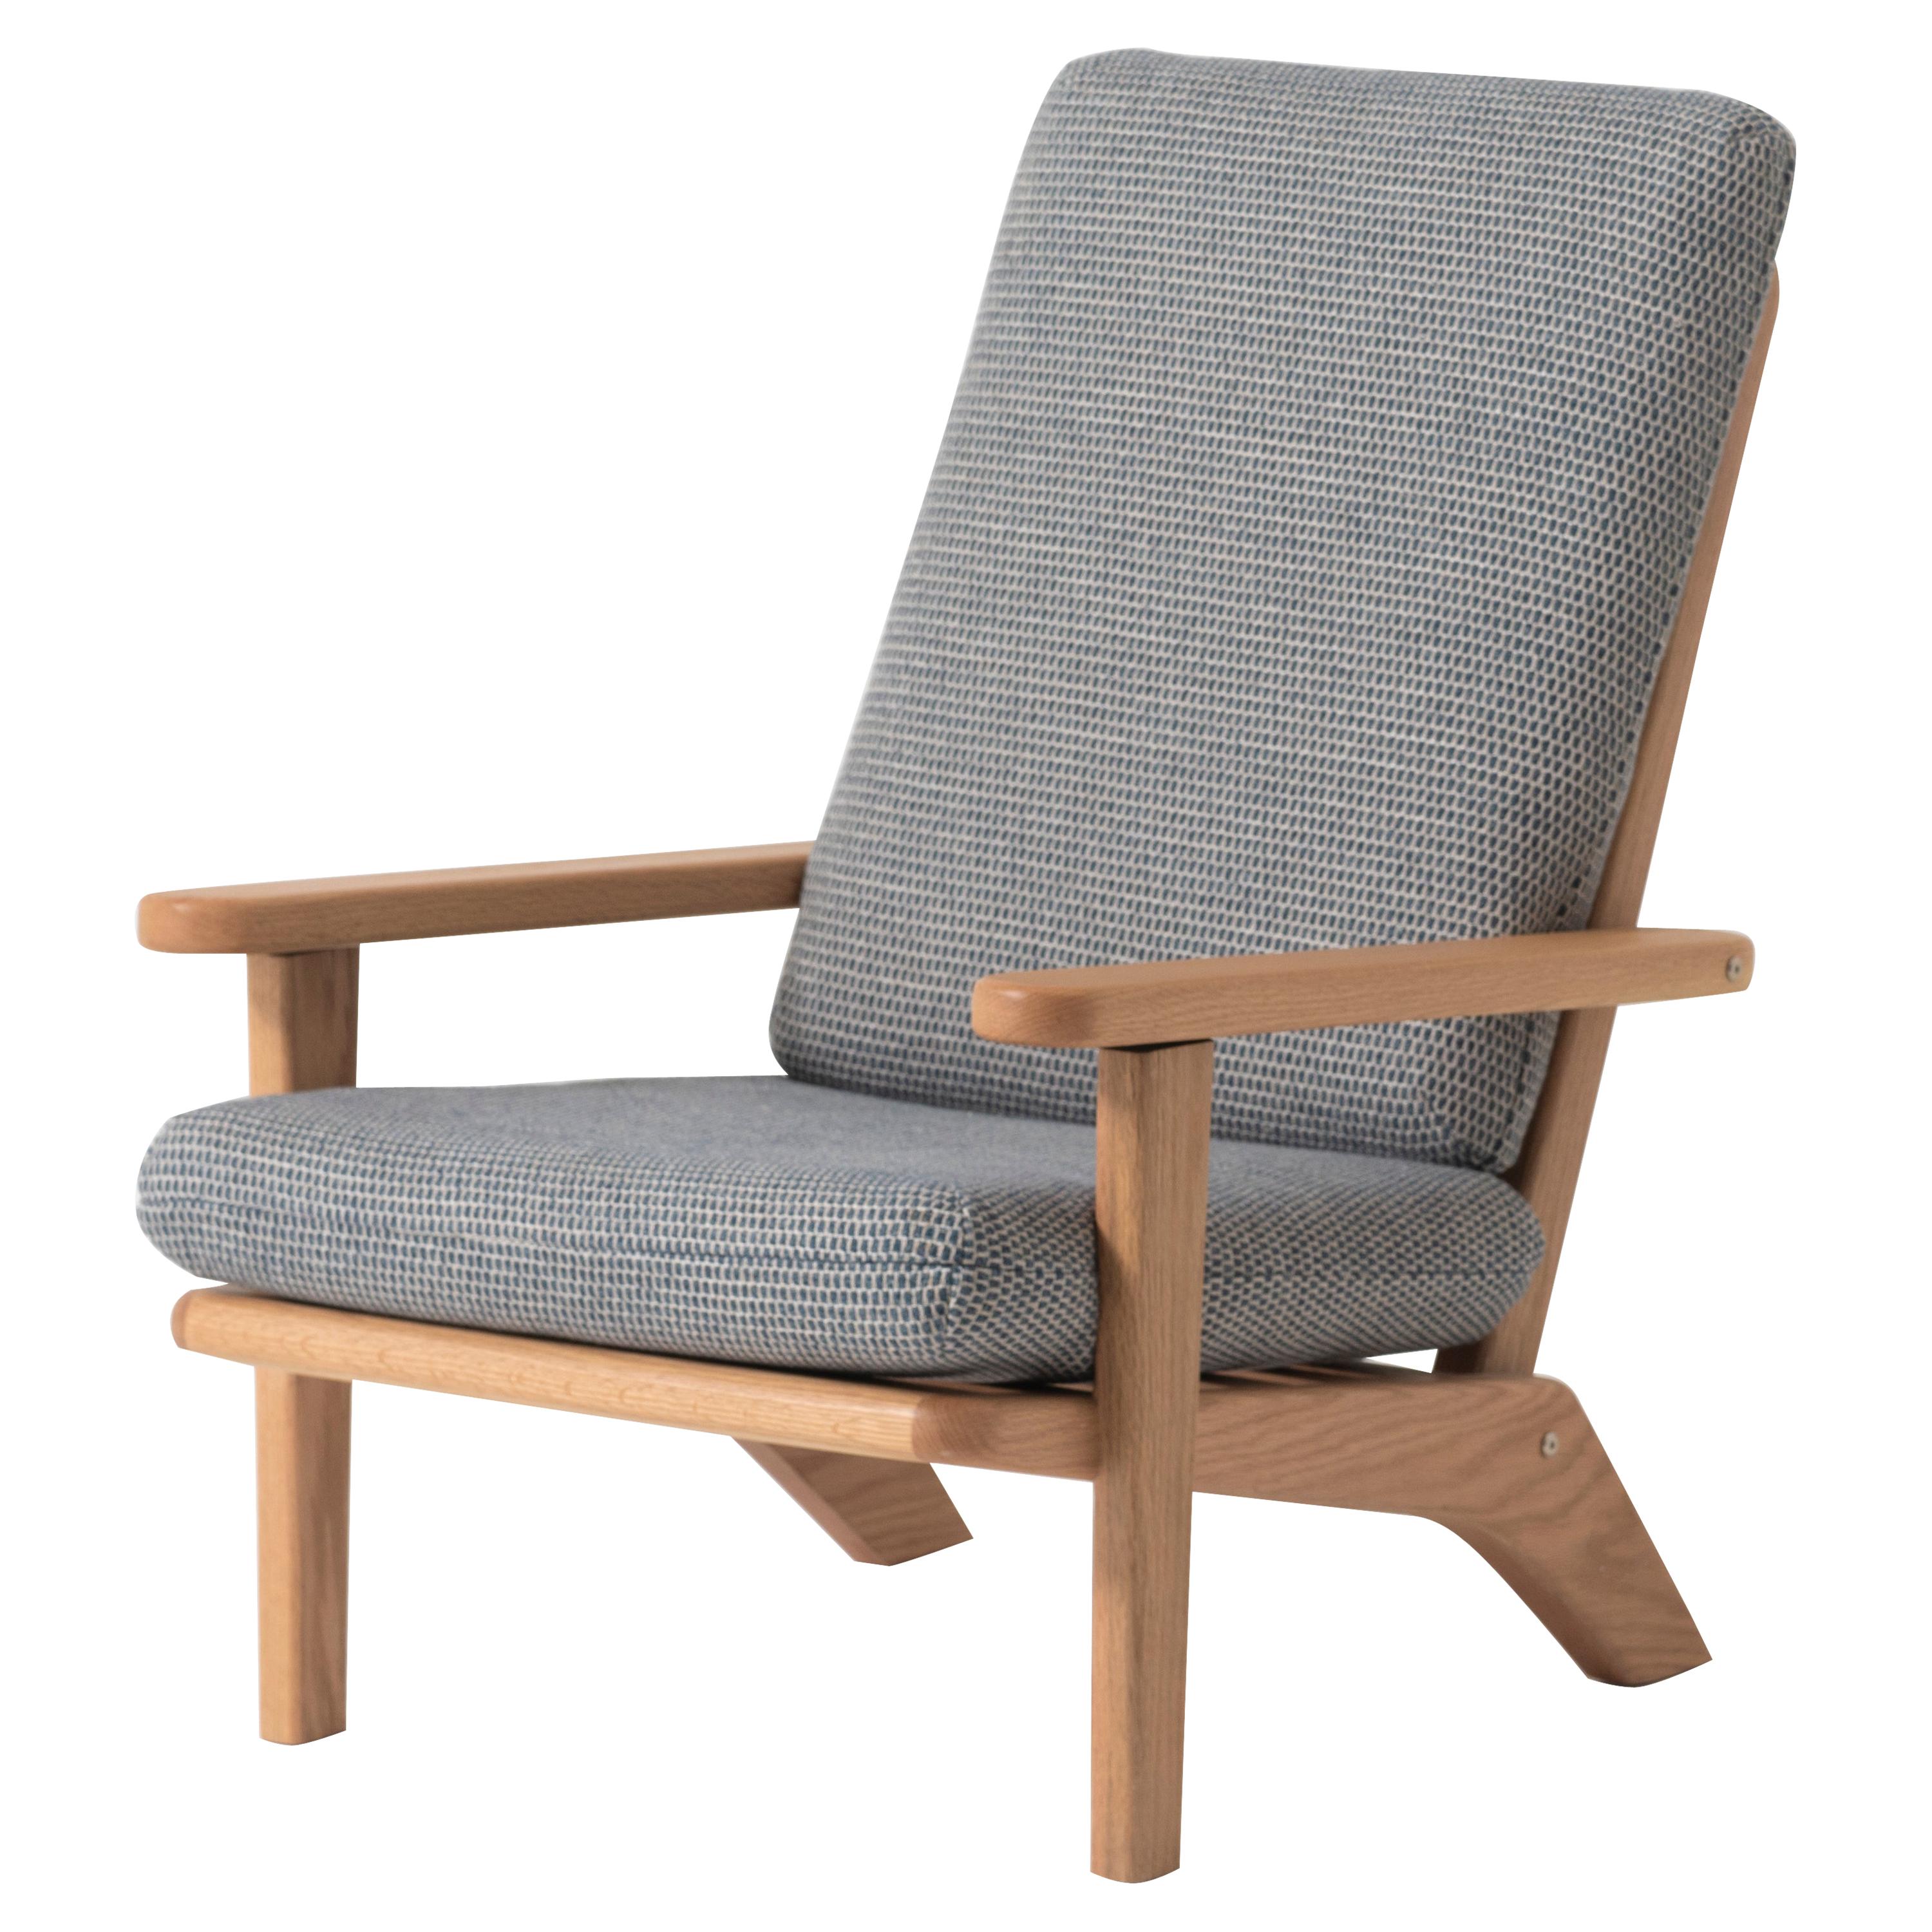 Chaise longue en bois de chêne massif avec coussin en textile gris et dossier inclinable